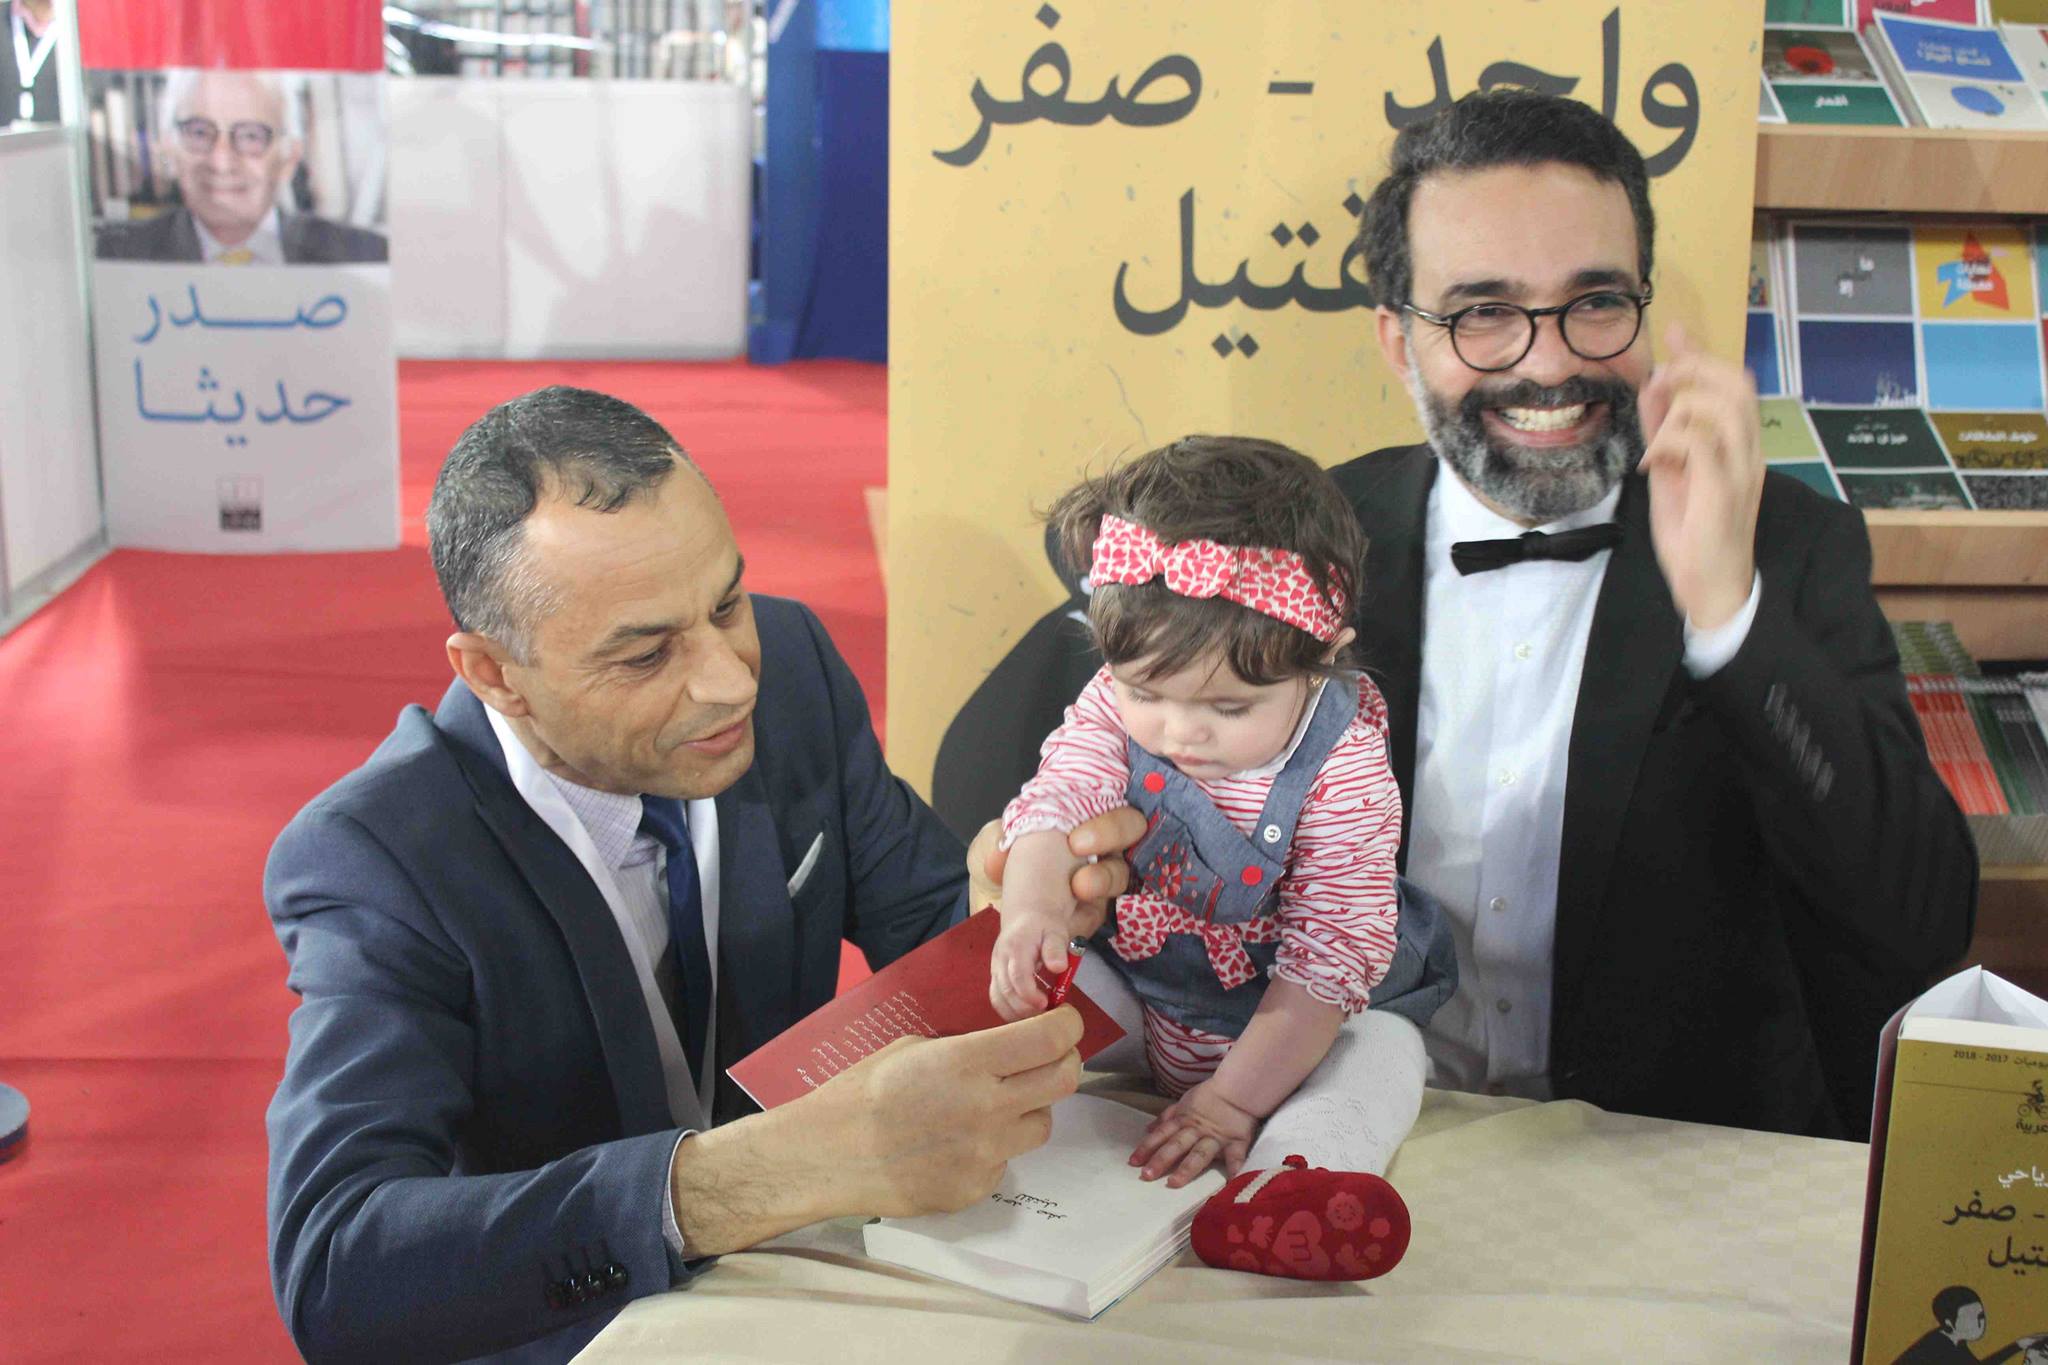 كمال الرياحى يوقع كتابه واحد صفر للقتيل الفائز بجائزة ابن بطوطة فى معرض تونس (32)